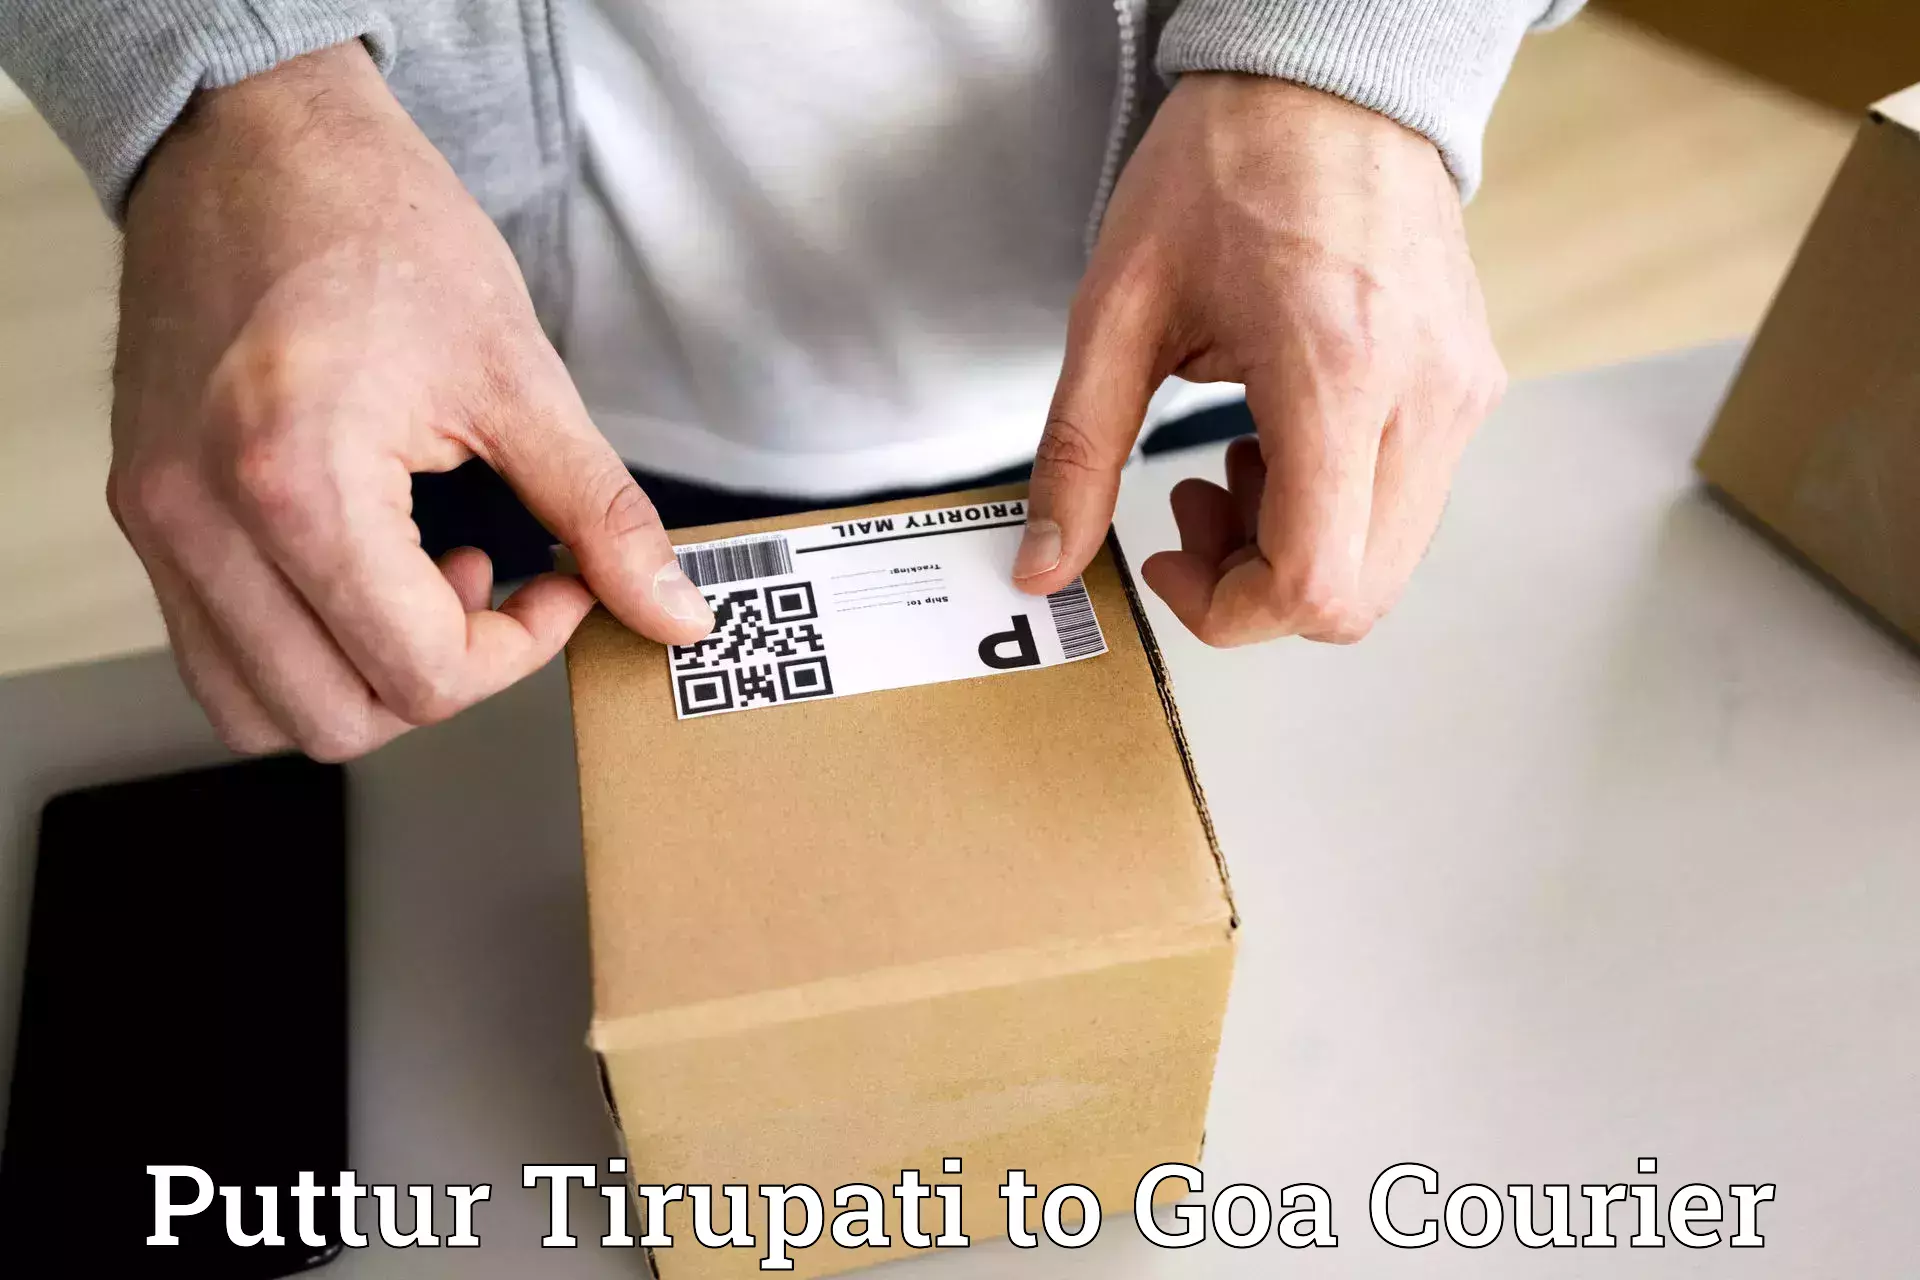 Bulk courier orders in Puttur Tirupati to South Goa